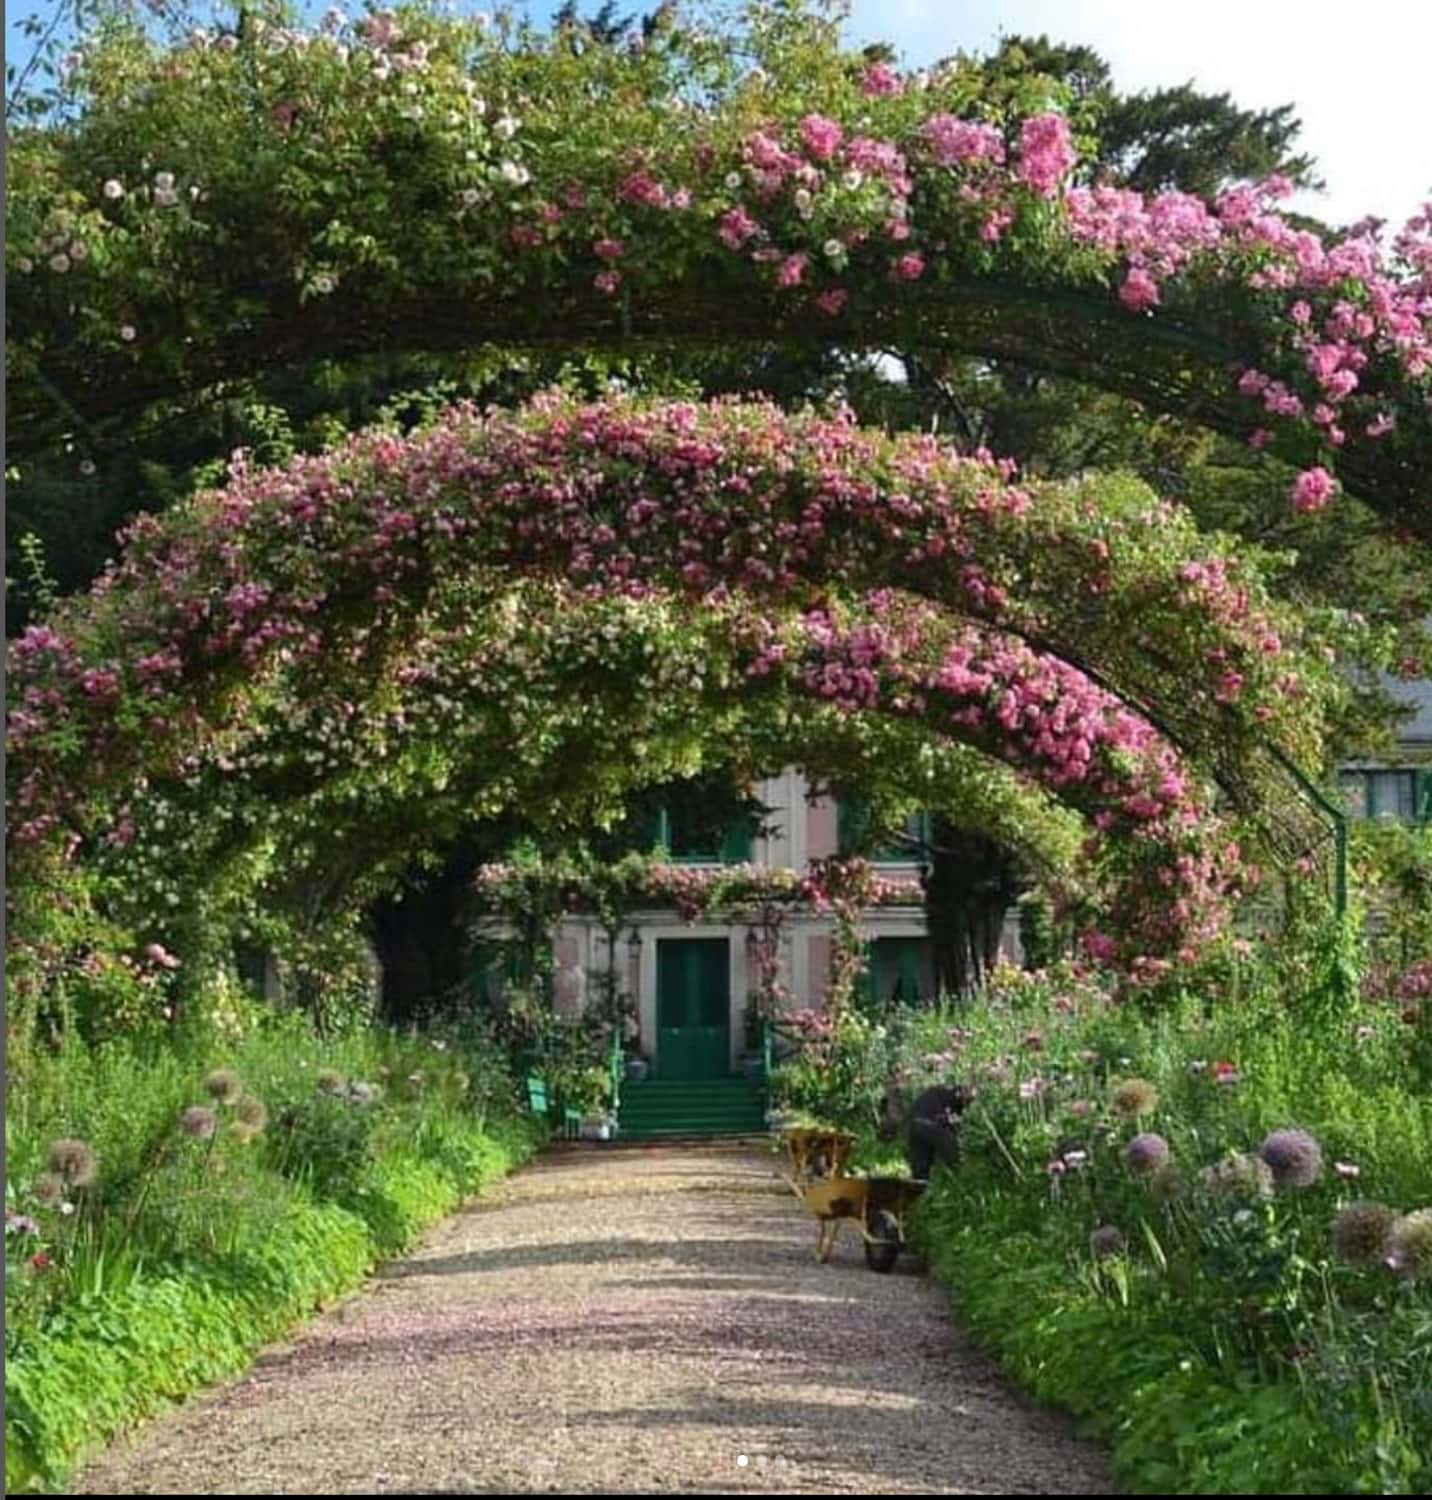 Monet's Garden via European Garden Designs